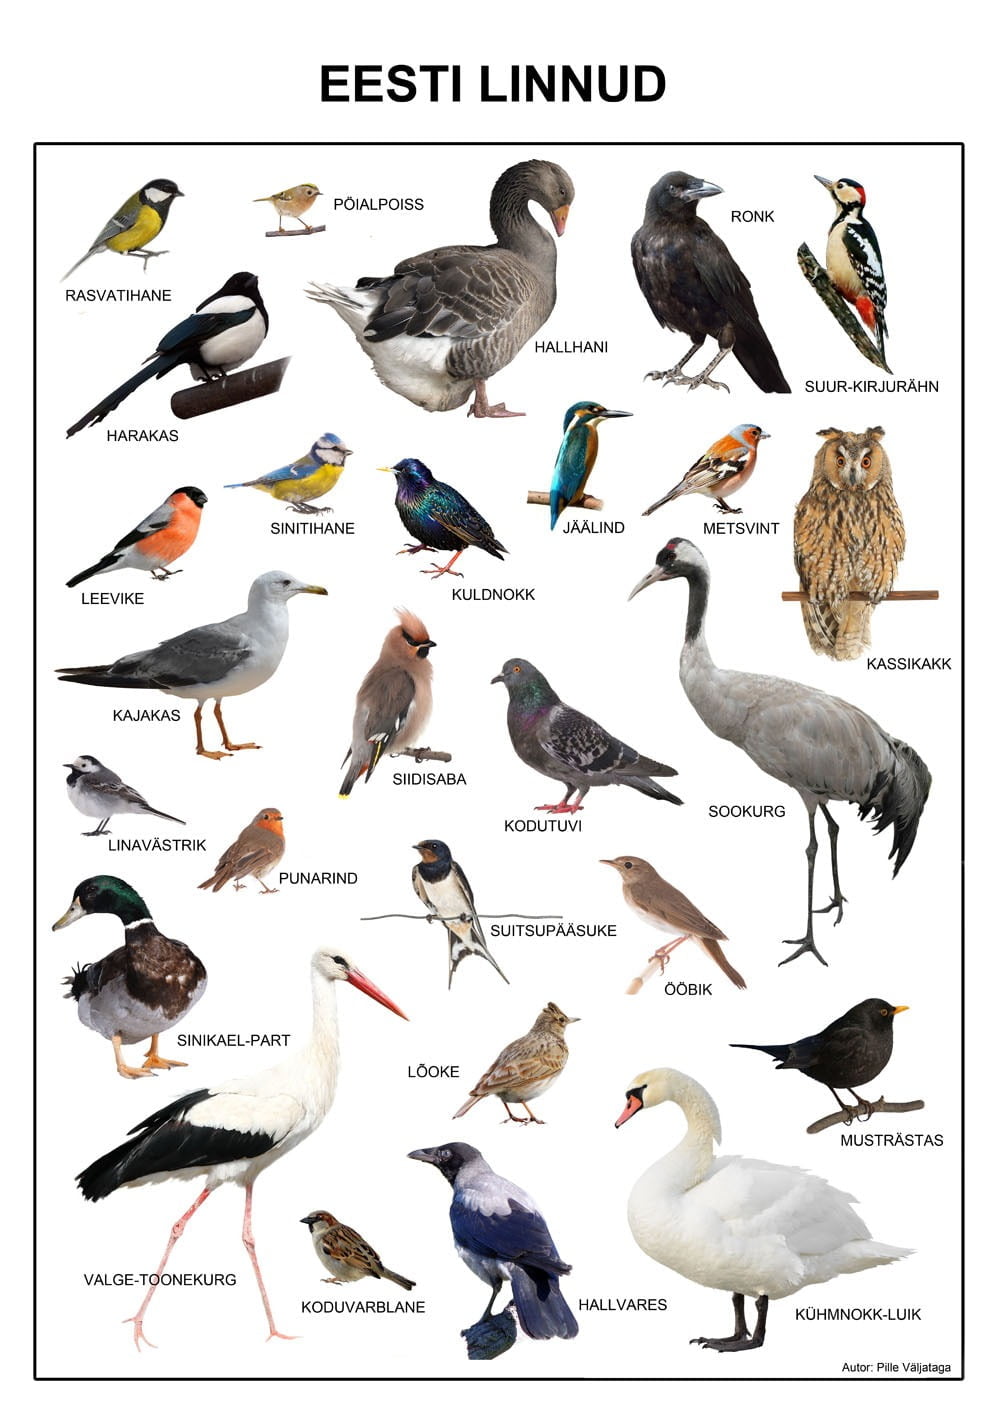 plakat poster eesti linnud